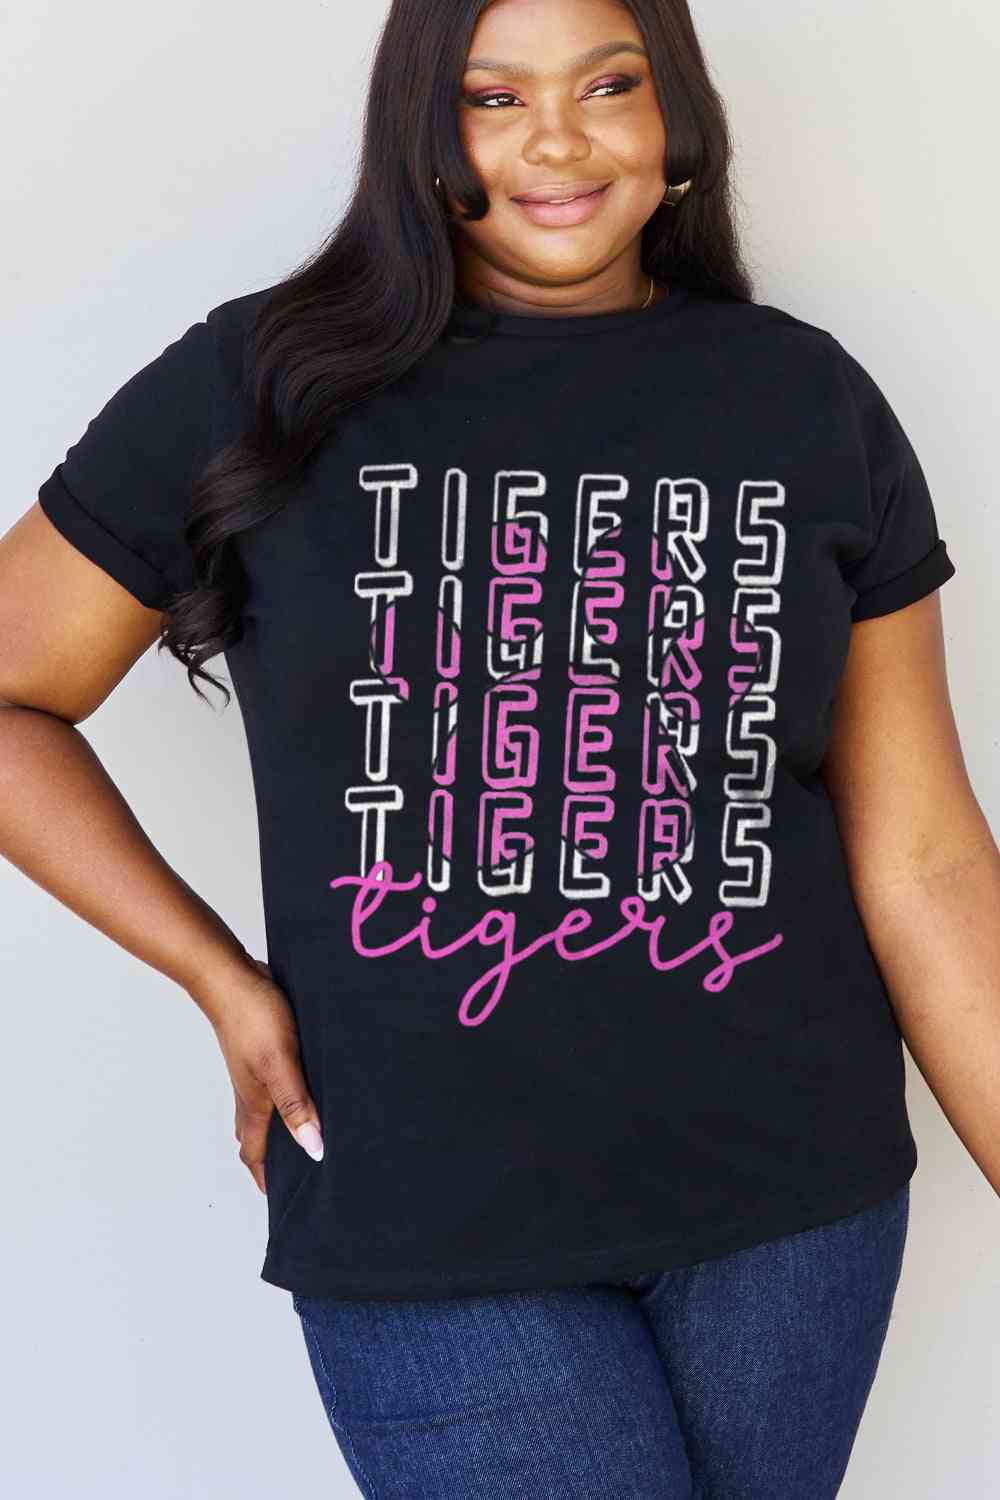 Camiseta de algodón con estampado TIGERS de tamaño completo de Simply Love